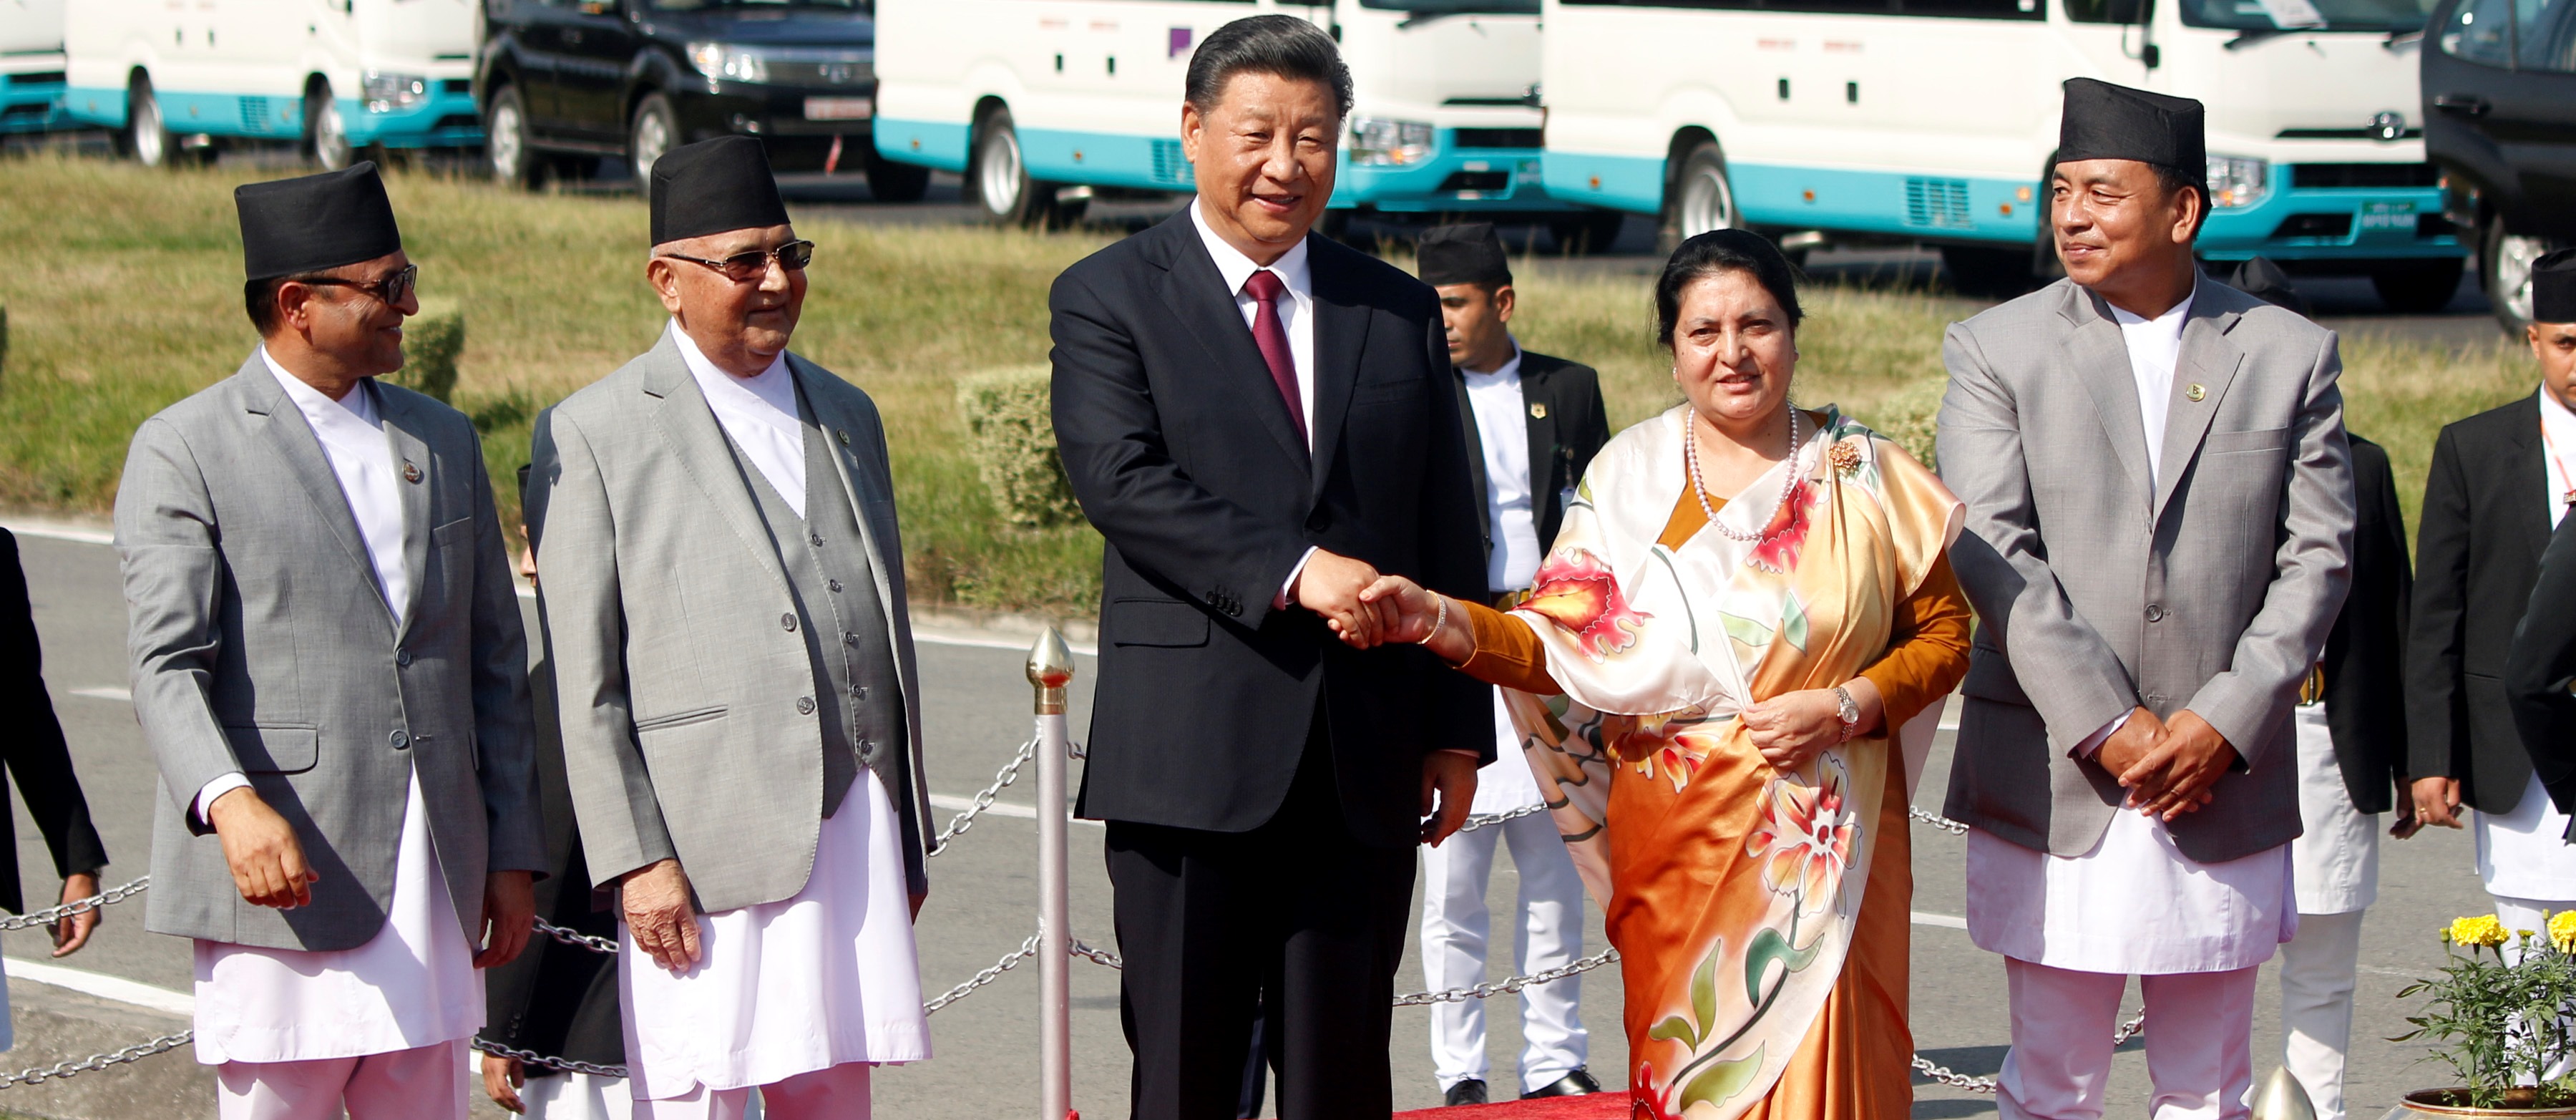 राष्ट्रपति सीको राजकीय भ्रमण : नेपाल–चीन सम्बन्ध नयाँ युगमा प्रवेश